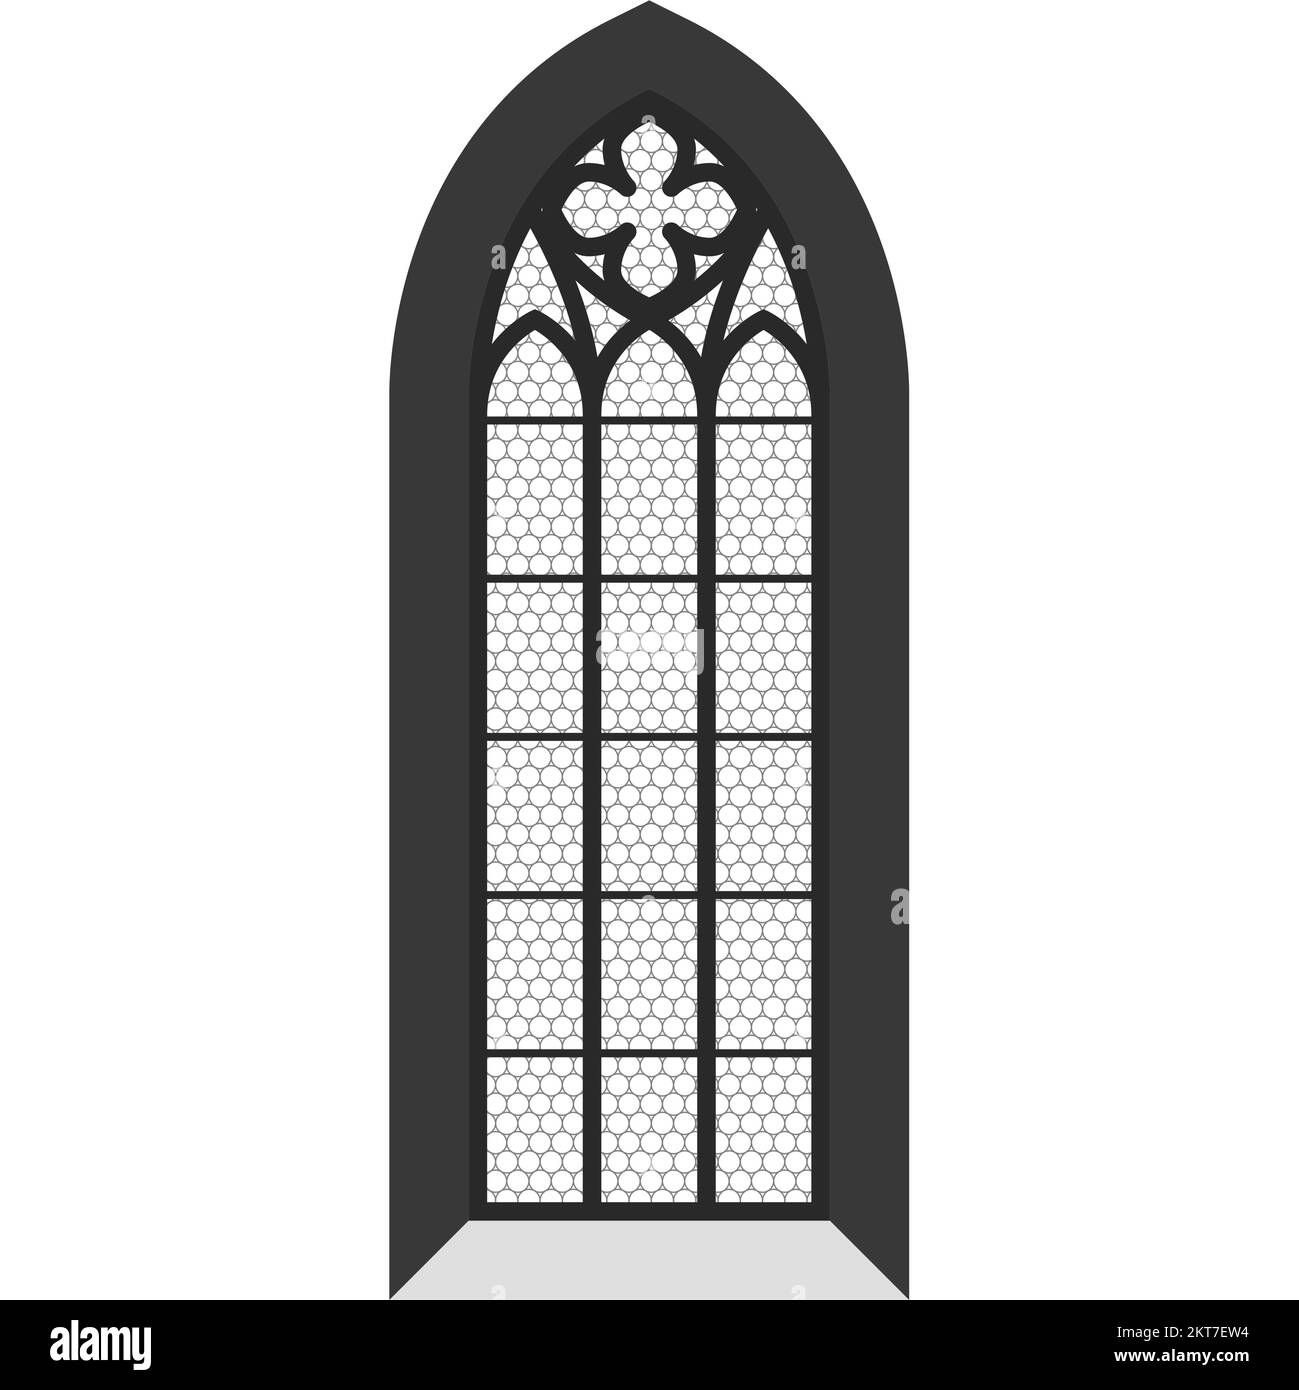 Kirchenfenster, Buntglasfenster im gotischen Stil im Tempel, katholische Kathedrale, Vektor Stock Vektor